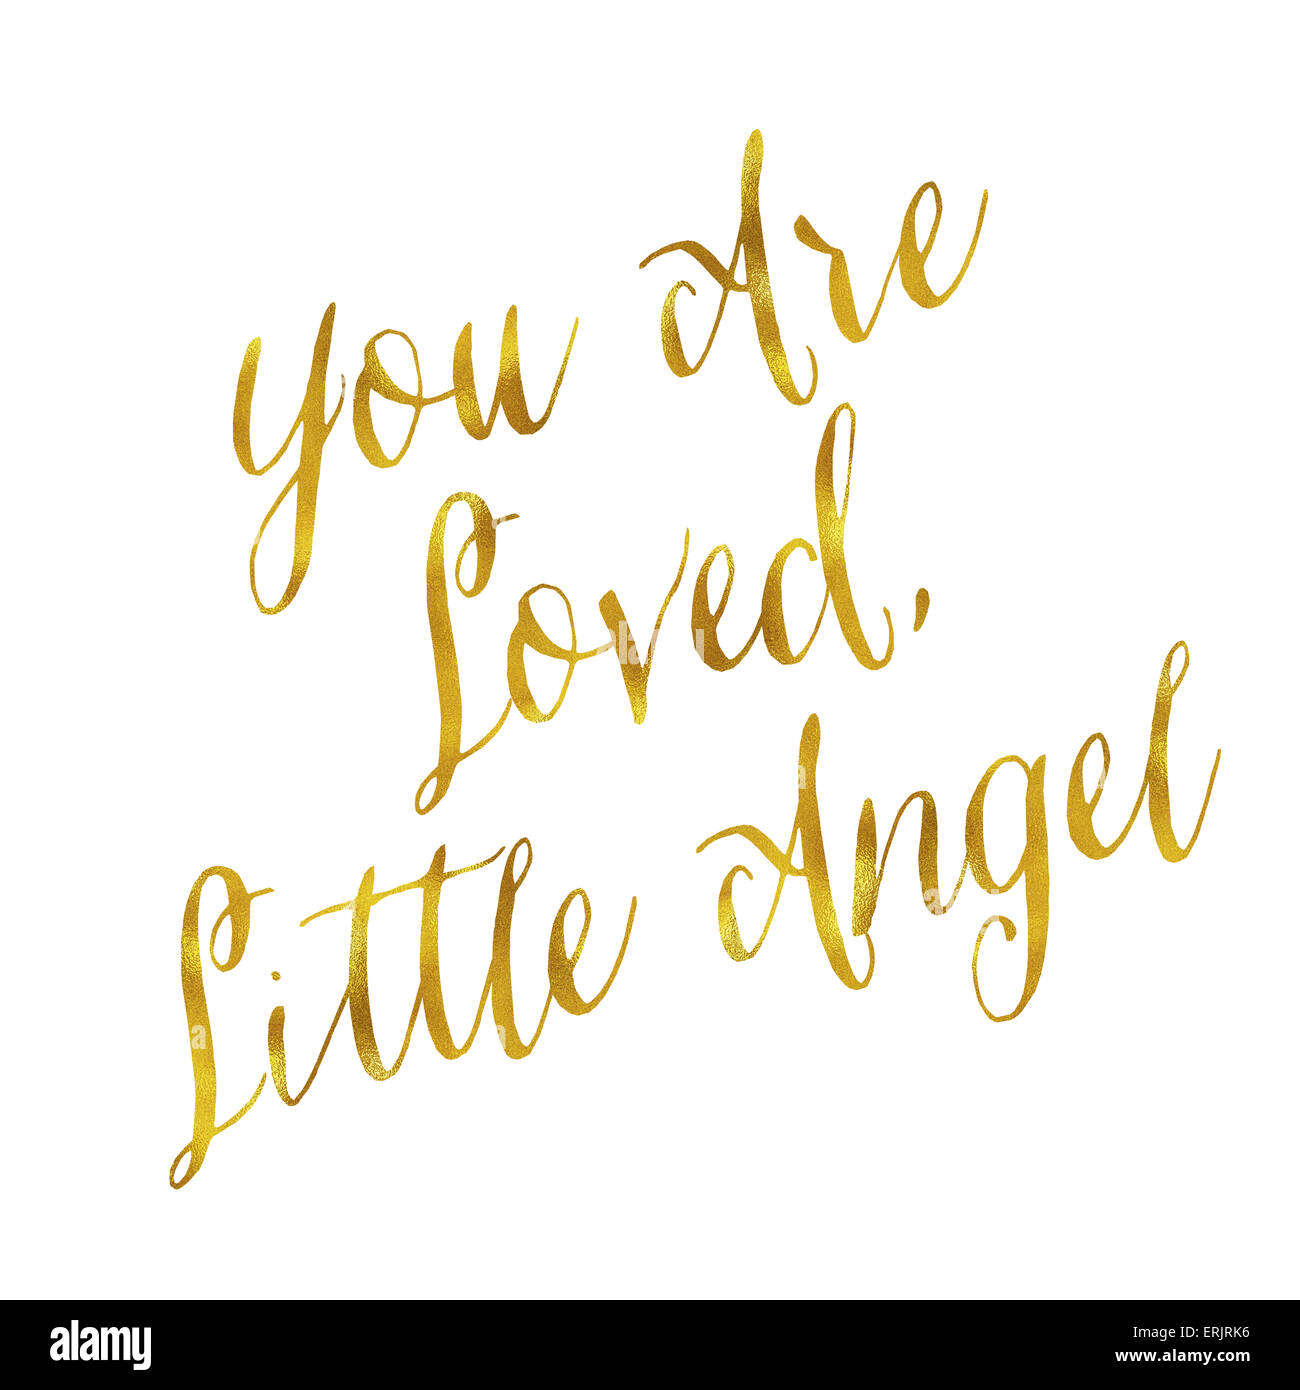 Seid ihr lieben kleinen Engel Gold Faux Folie Metallic Glitter Zitat Isolated on White Stockfoto